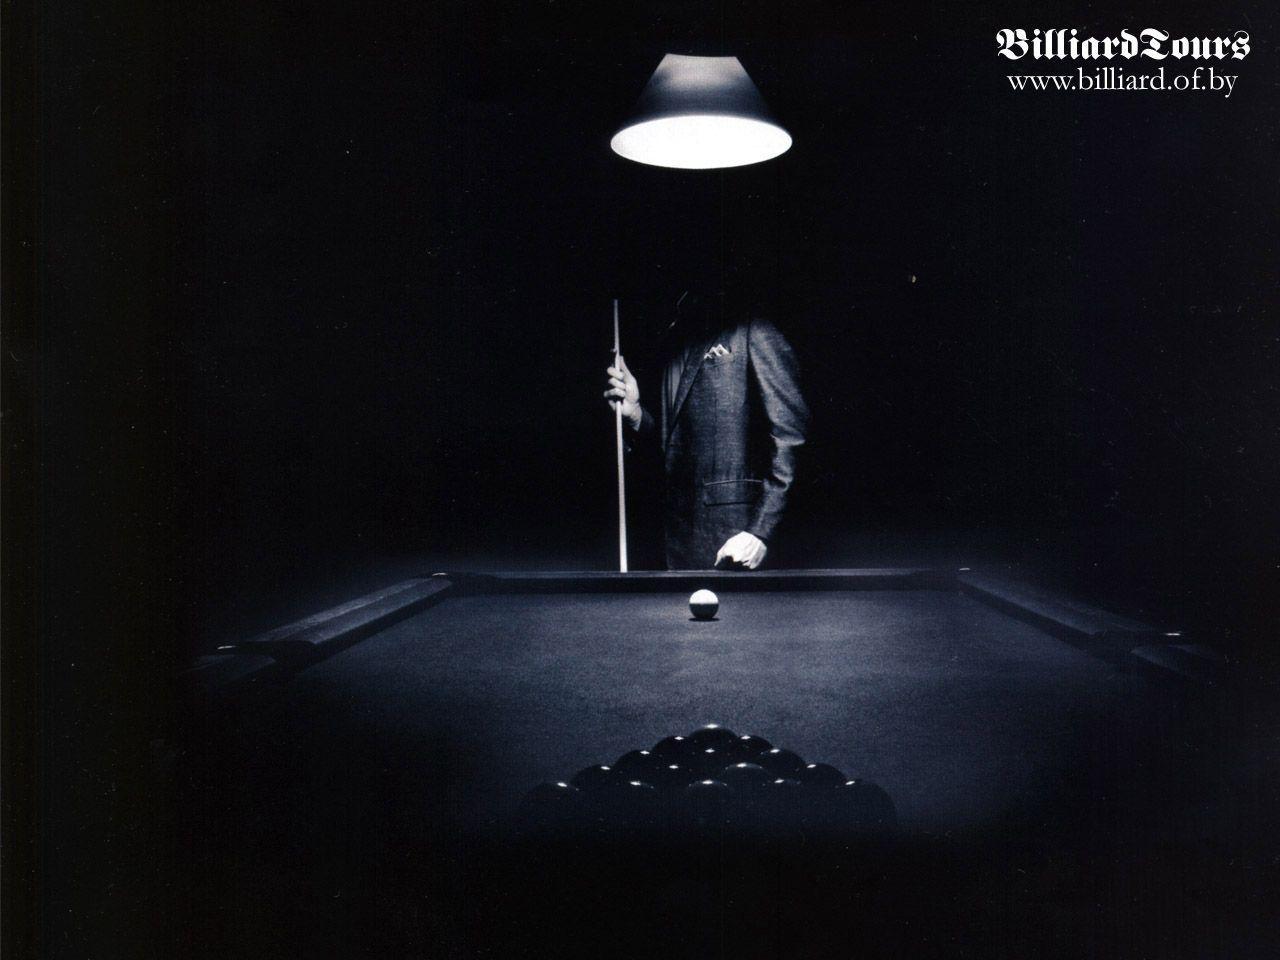 Billiard 05 Обои - Бильярд (Billiards) - Спорт - Коллекция обоев